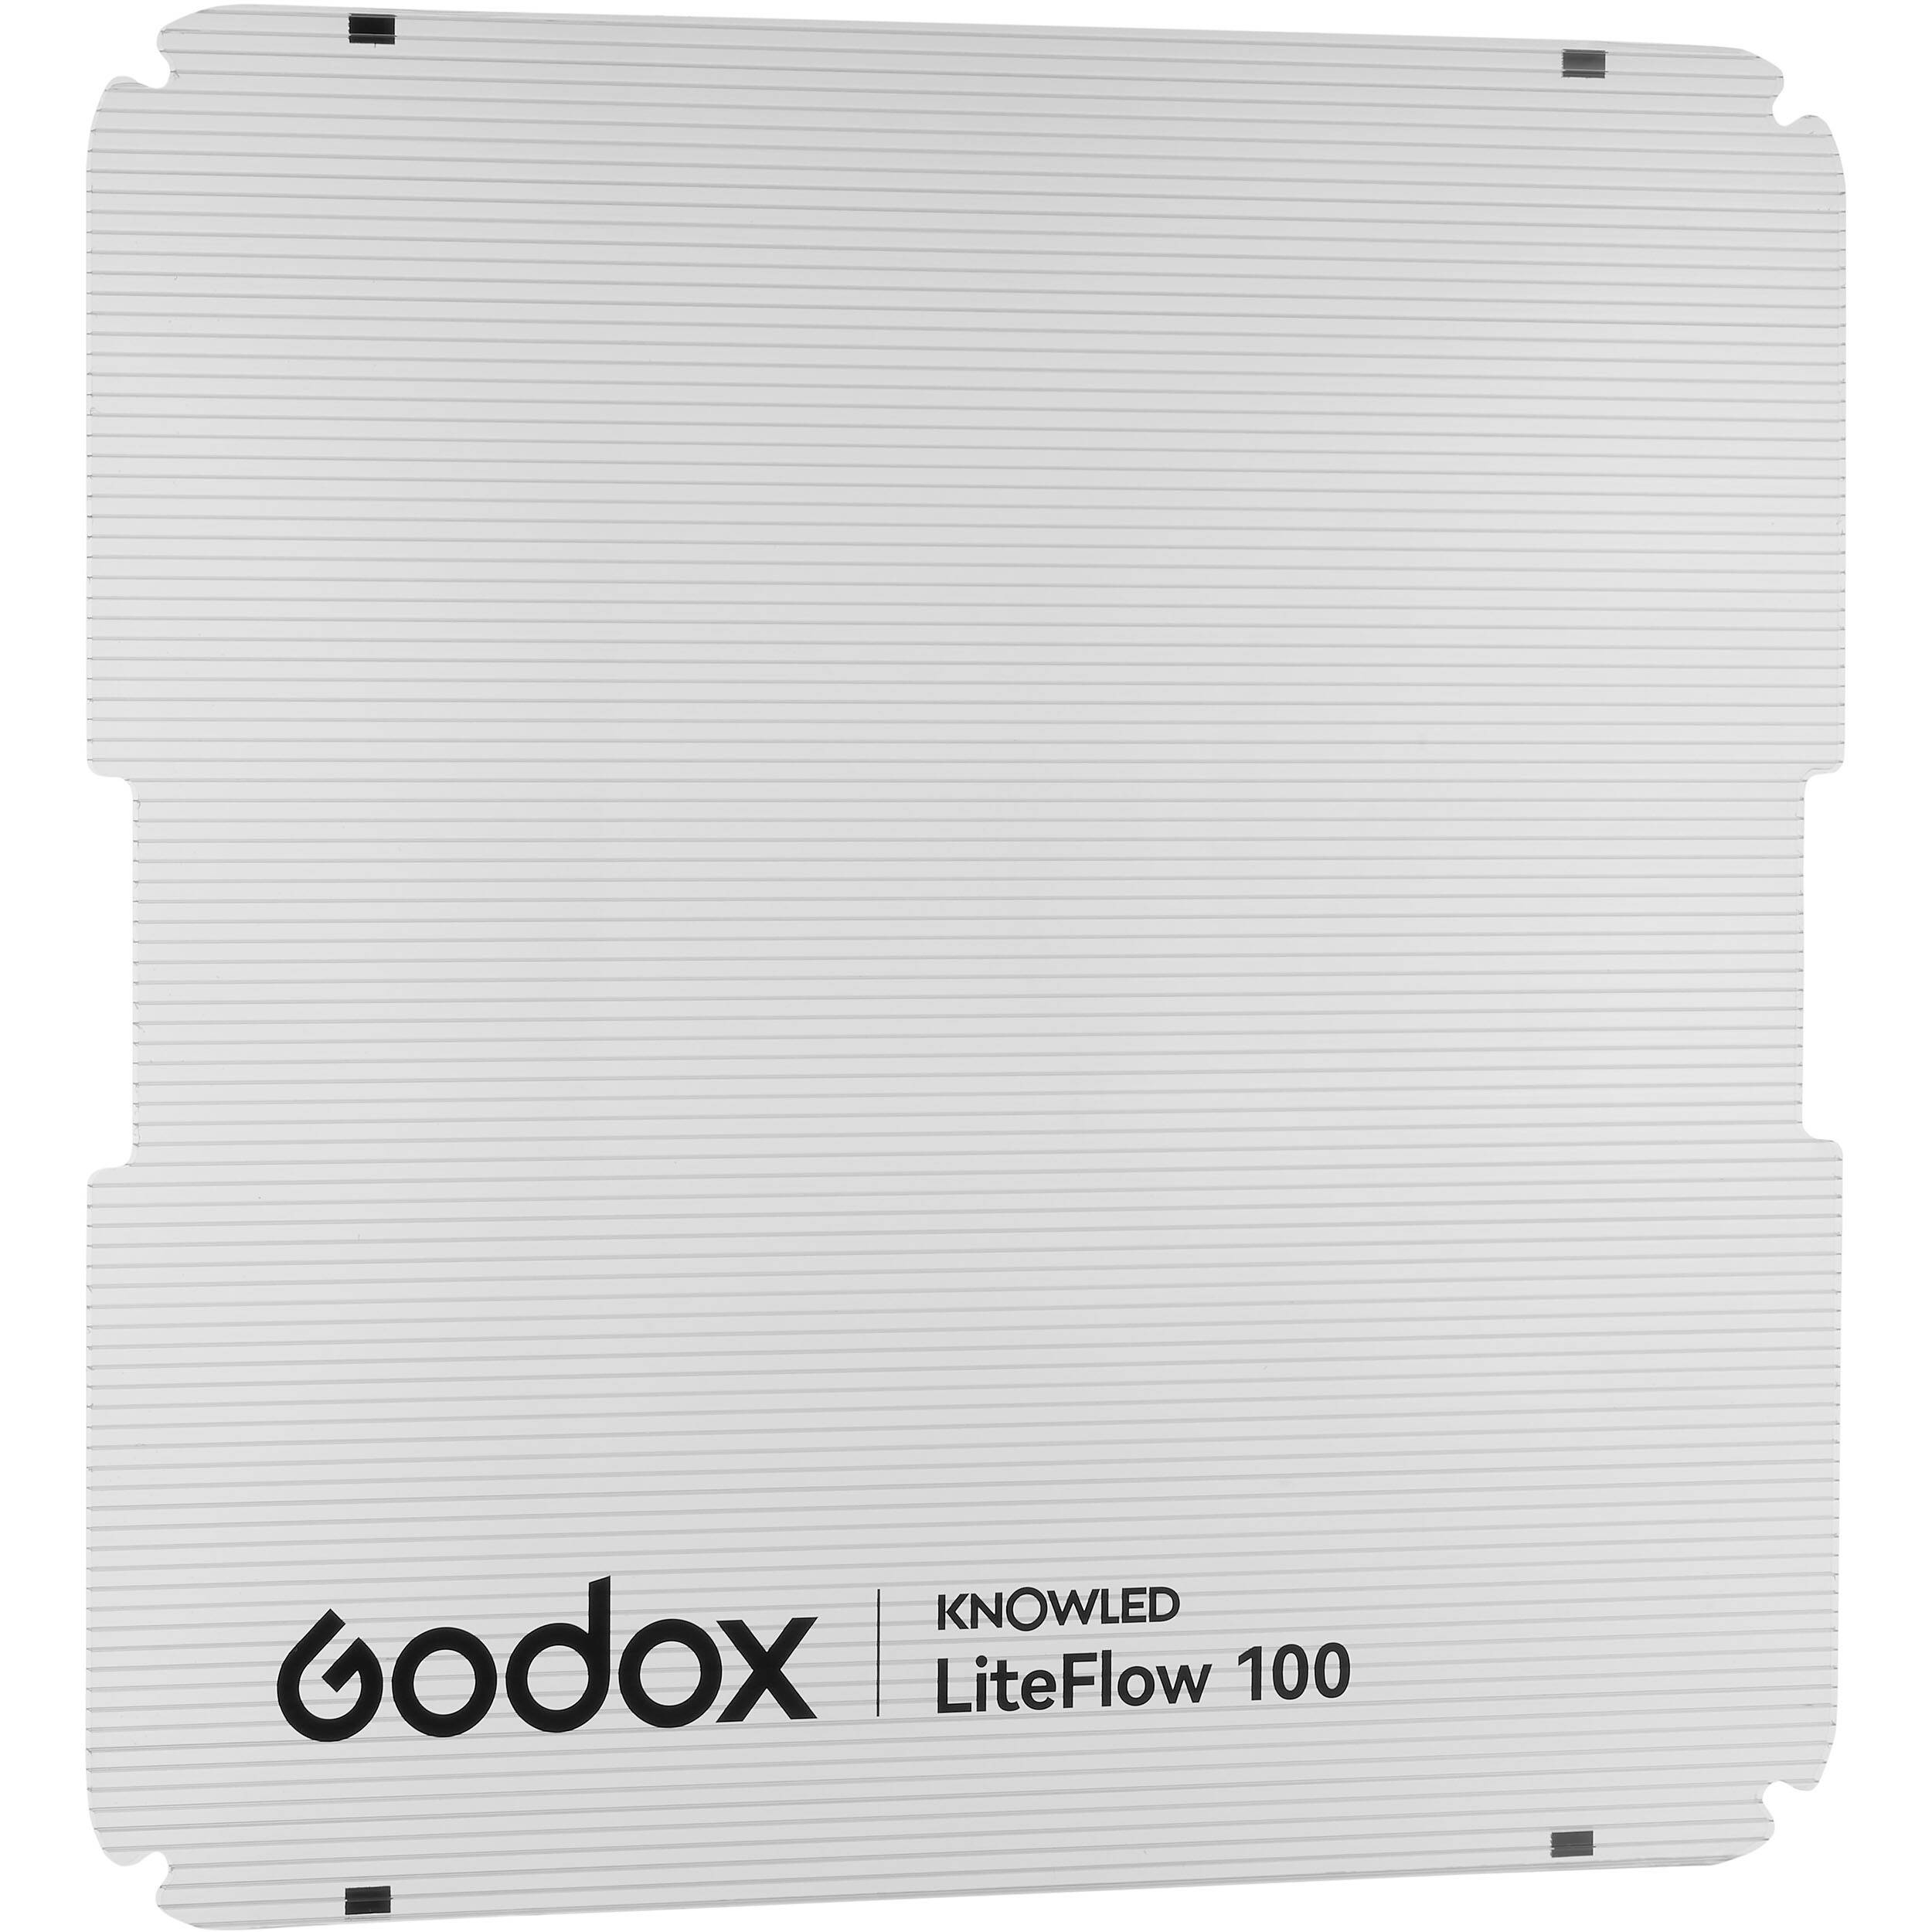   - Godox Knowled LiteFlow 100 K1   Ultra-mart